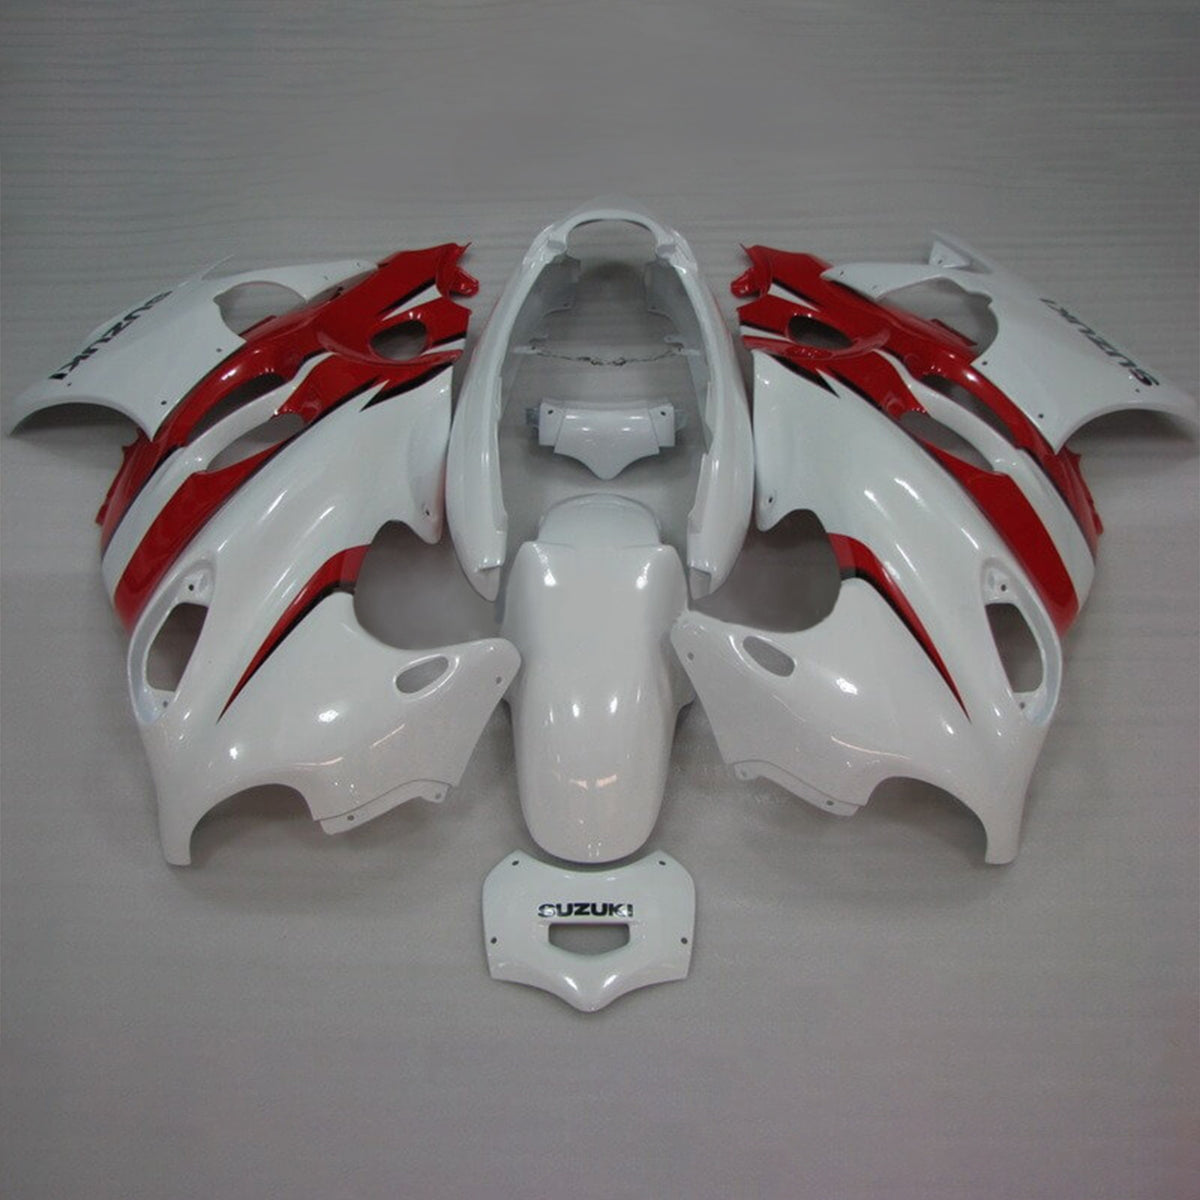 Amotopart Verkleidungsset für Suzuki 2005–2006 Katana GSXF600/750, Weiß, Rot